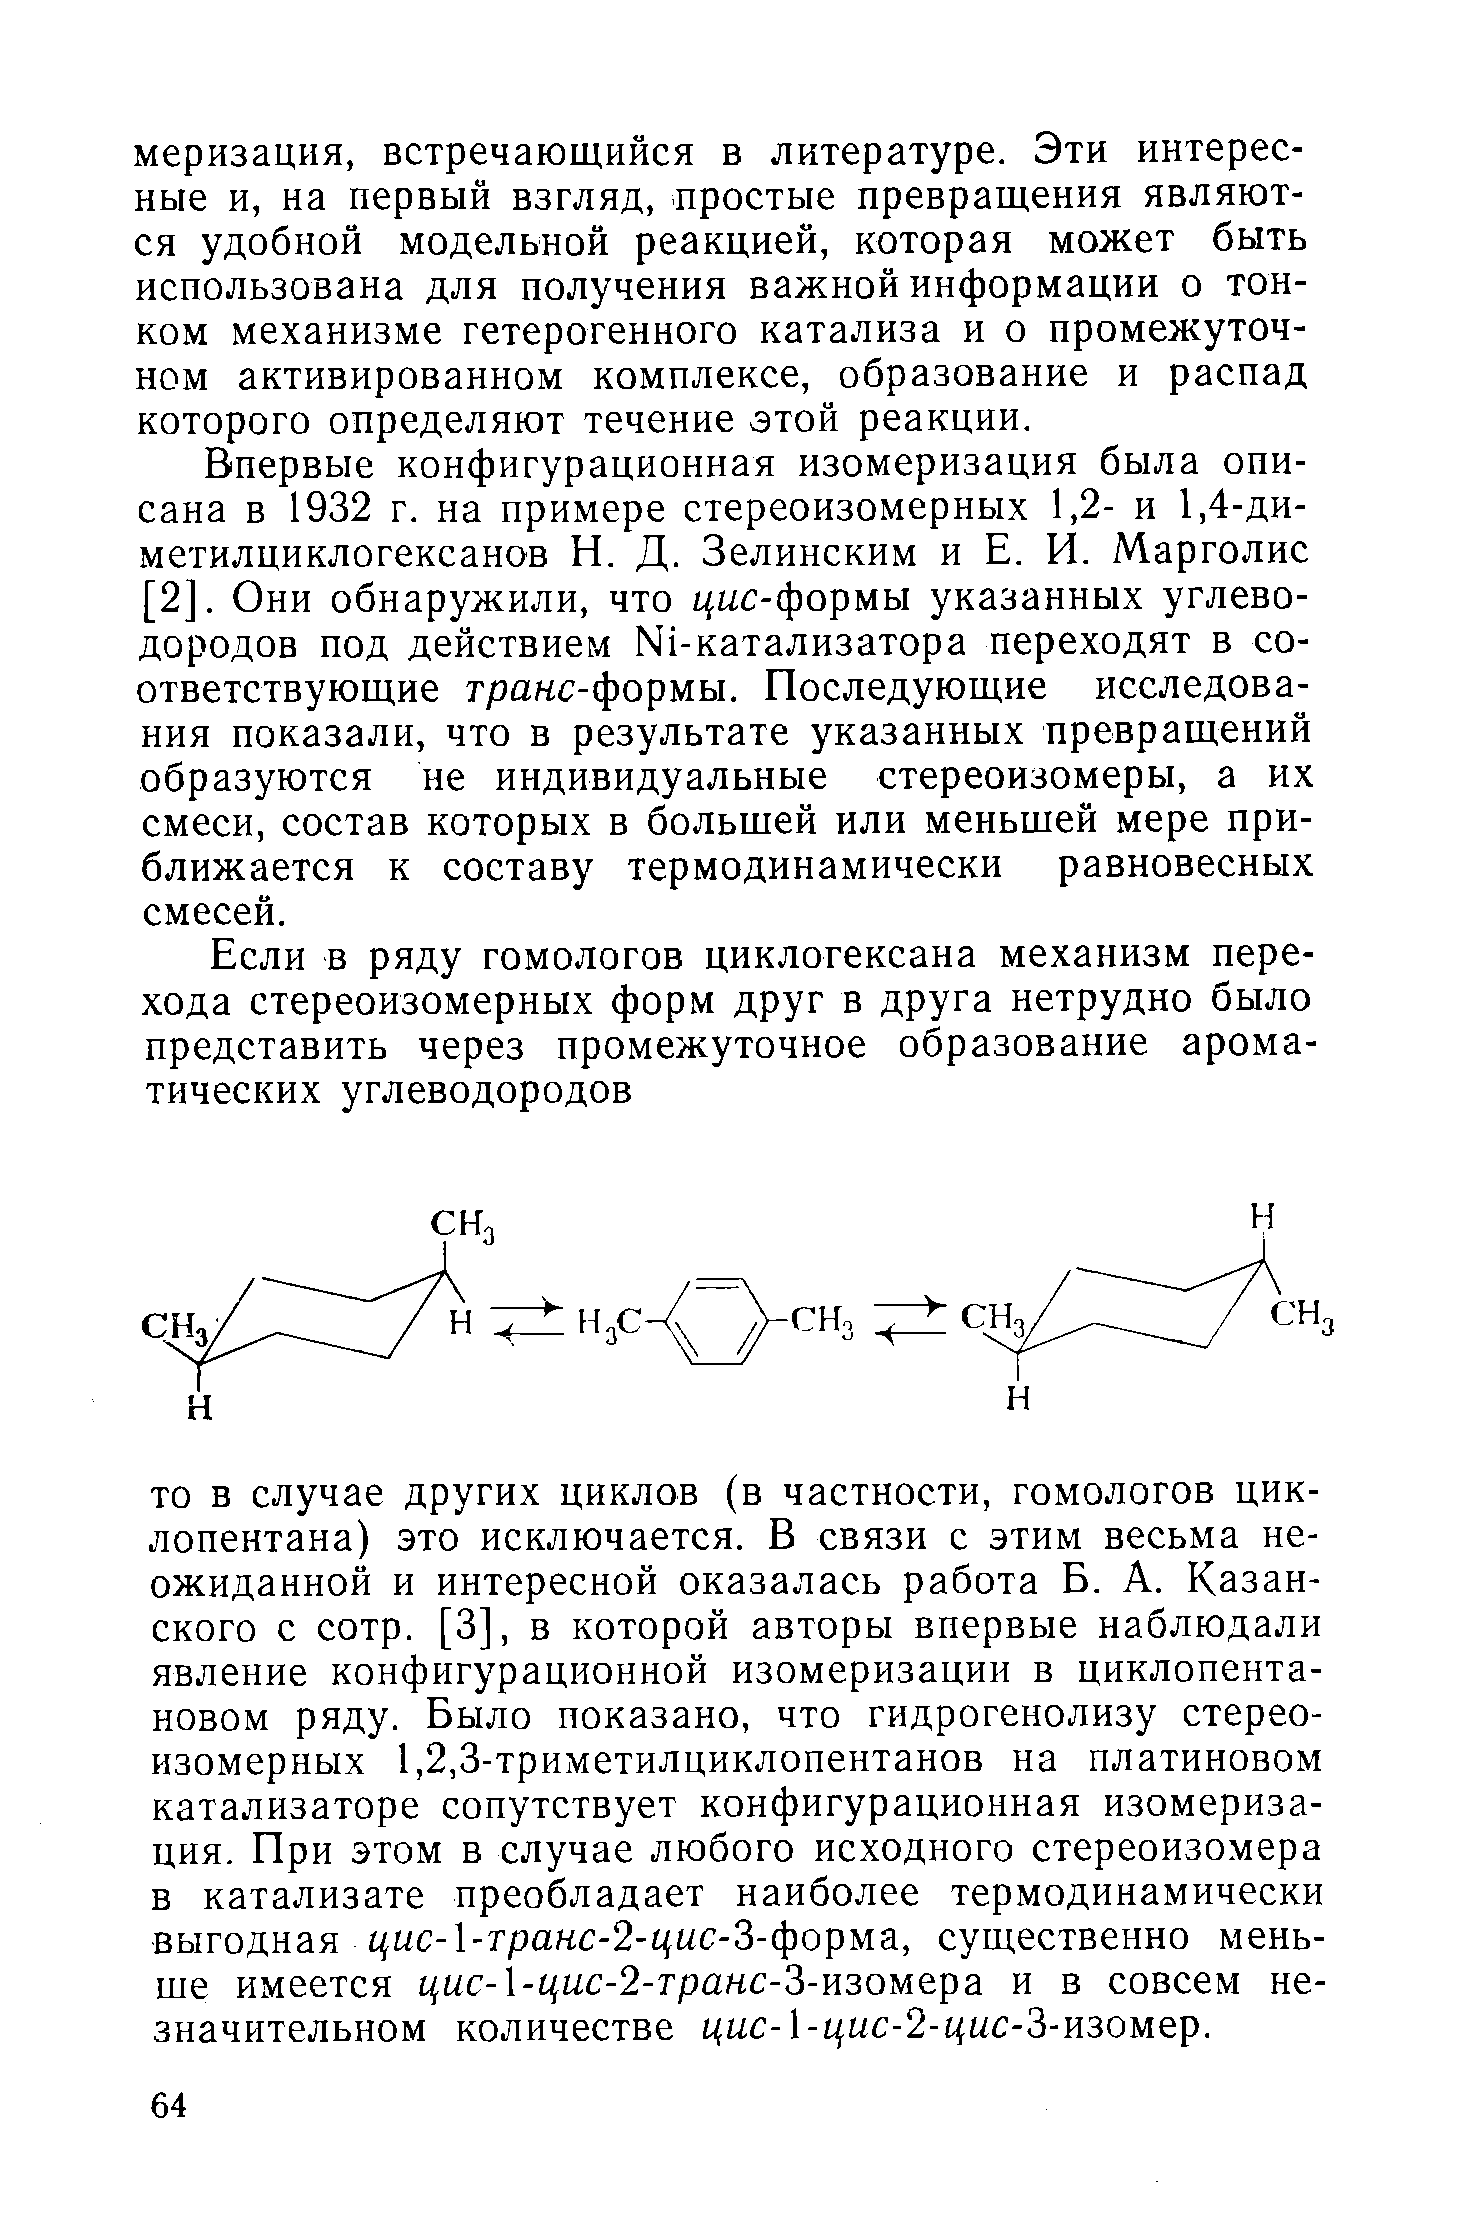 Впервые конфигурационная изомеризация была описана в 1932 г. на примере стереоизомерных 1,2- и 1,4-ди-метилциклогексанов Н. Д. Зелинским и Е. И. Марголис [2]. Они обнаружили, что 1(цс-формы указанных углеводородов под действием Ы1-катализатора переходят в соответствующие гранс-формы. Последующие исследования показали, что в результате указанных превращений образуются не индивидуальные стереоизомеры, а их смеси, состав которых в большей или меньшей мере приближается к составу термодинамически равновесных смесей.